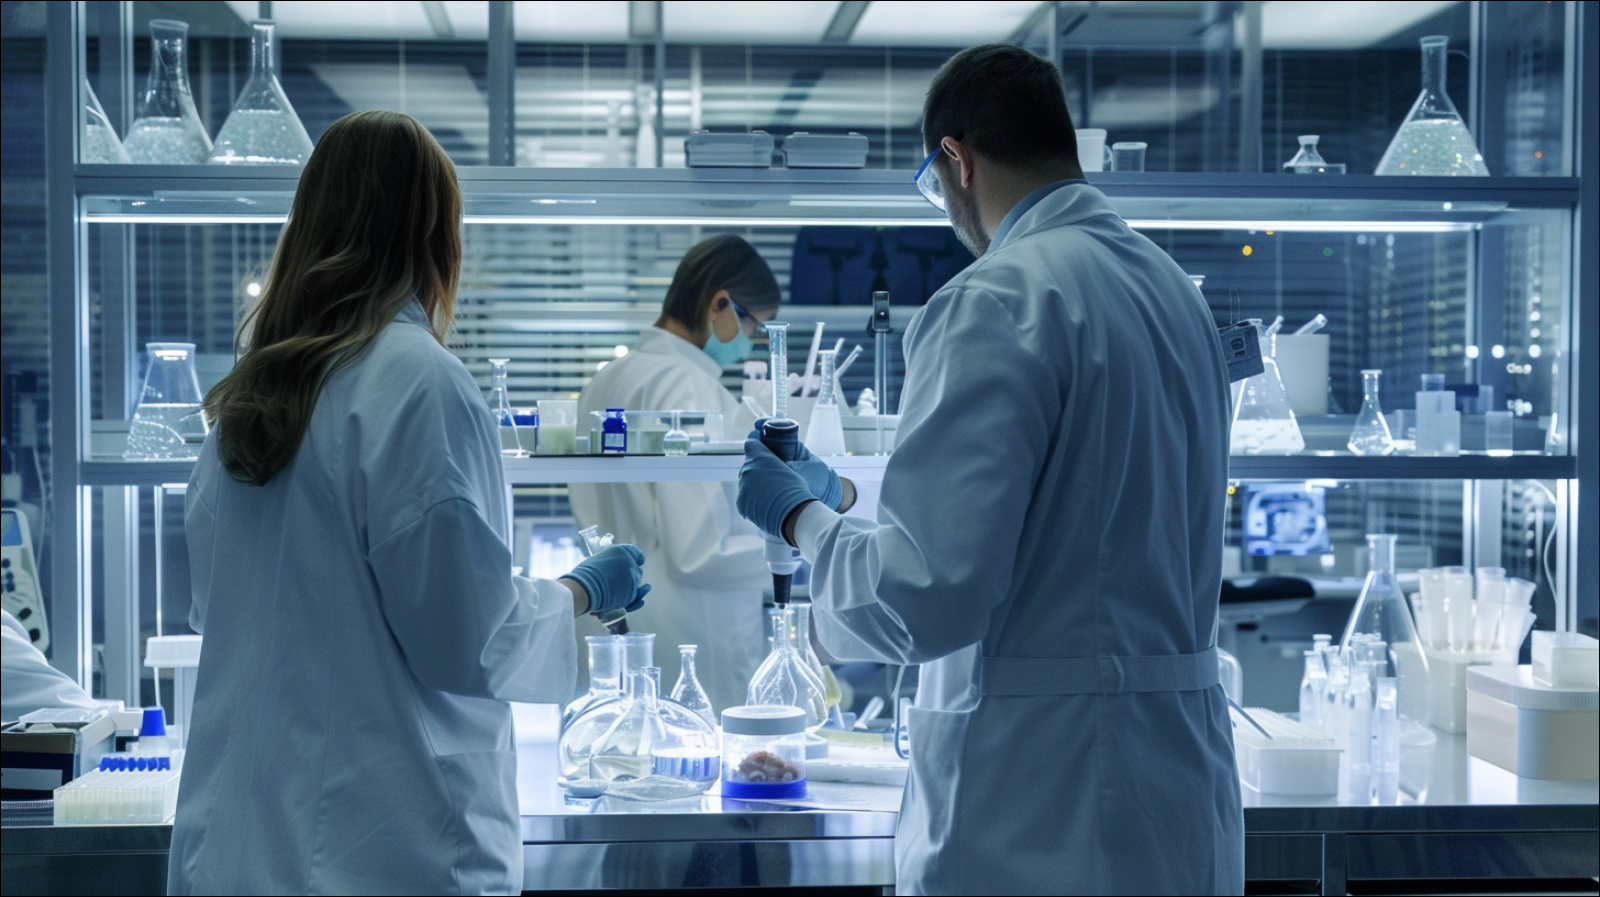 Forscher in weißen Labormänteln arbeiten konzentriert an Experimenten in einem modernen Labor.